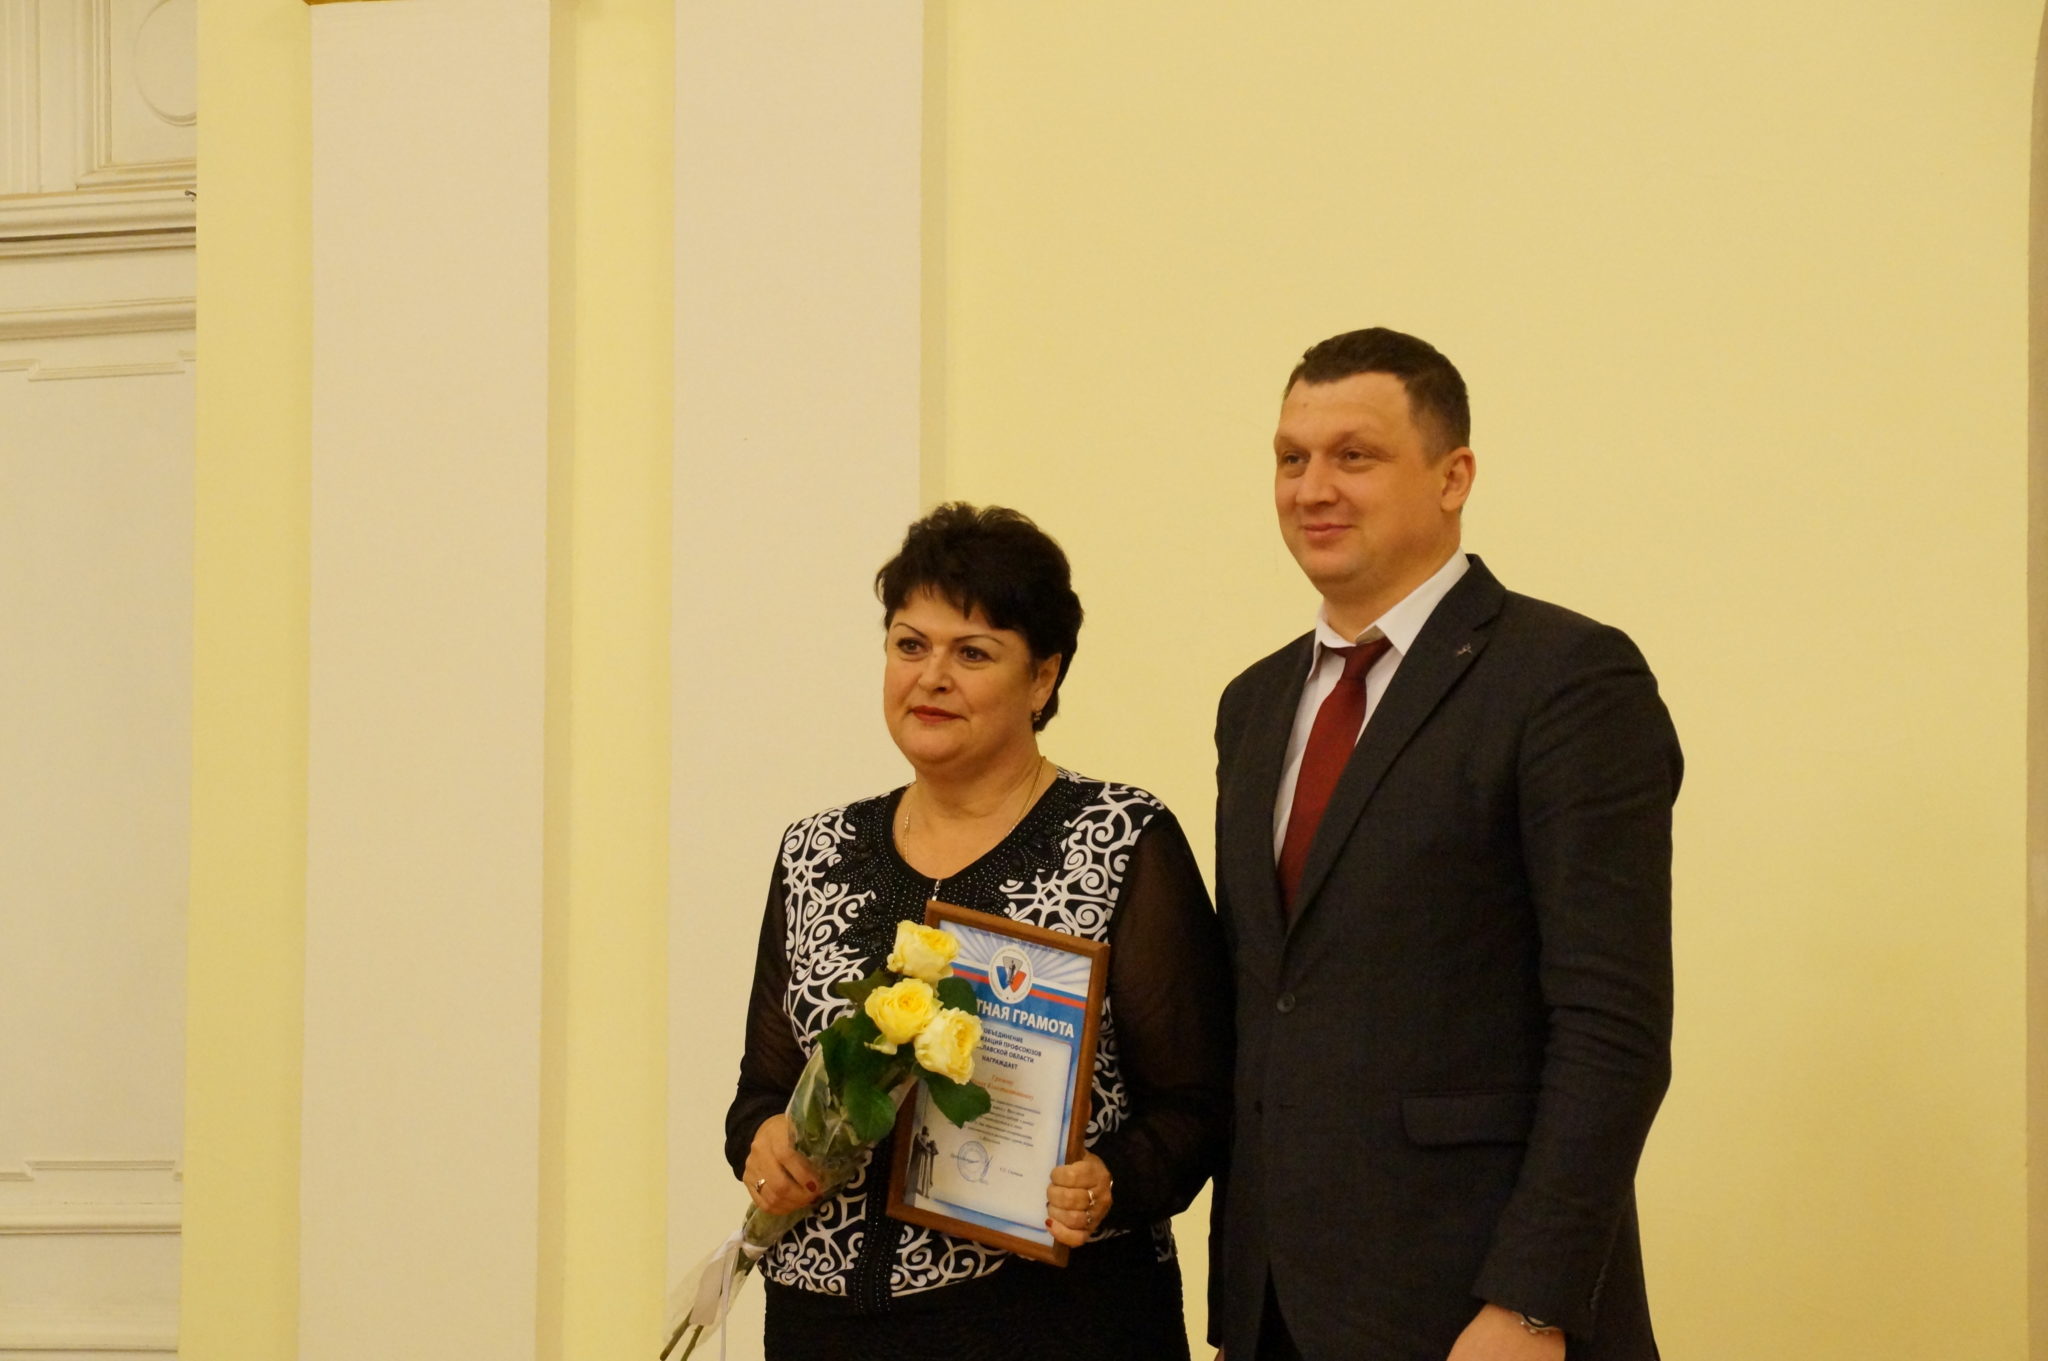 Лидер ярославских профсоюзов поздравил Департамент социально-экономического развития мэрии города с 20-летием